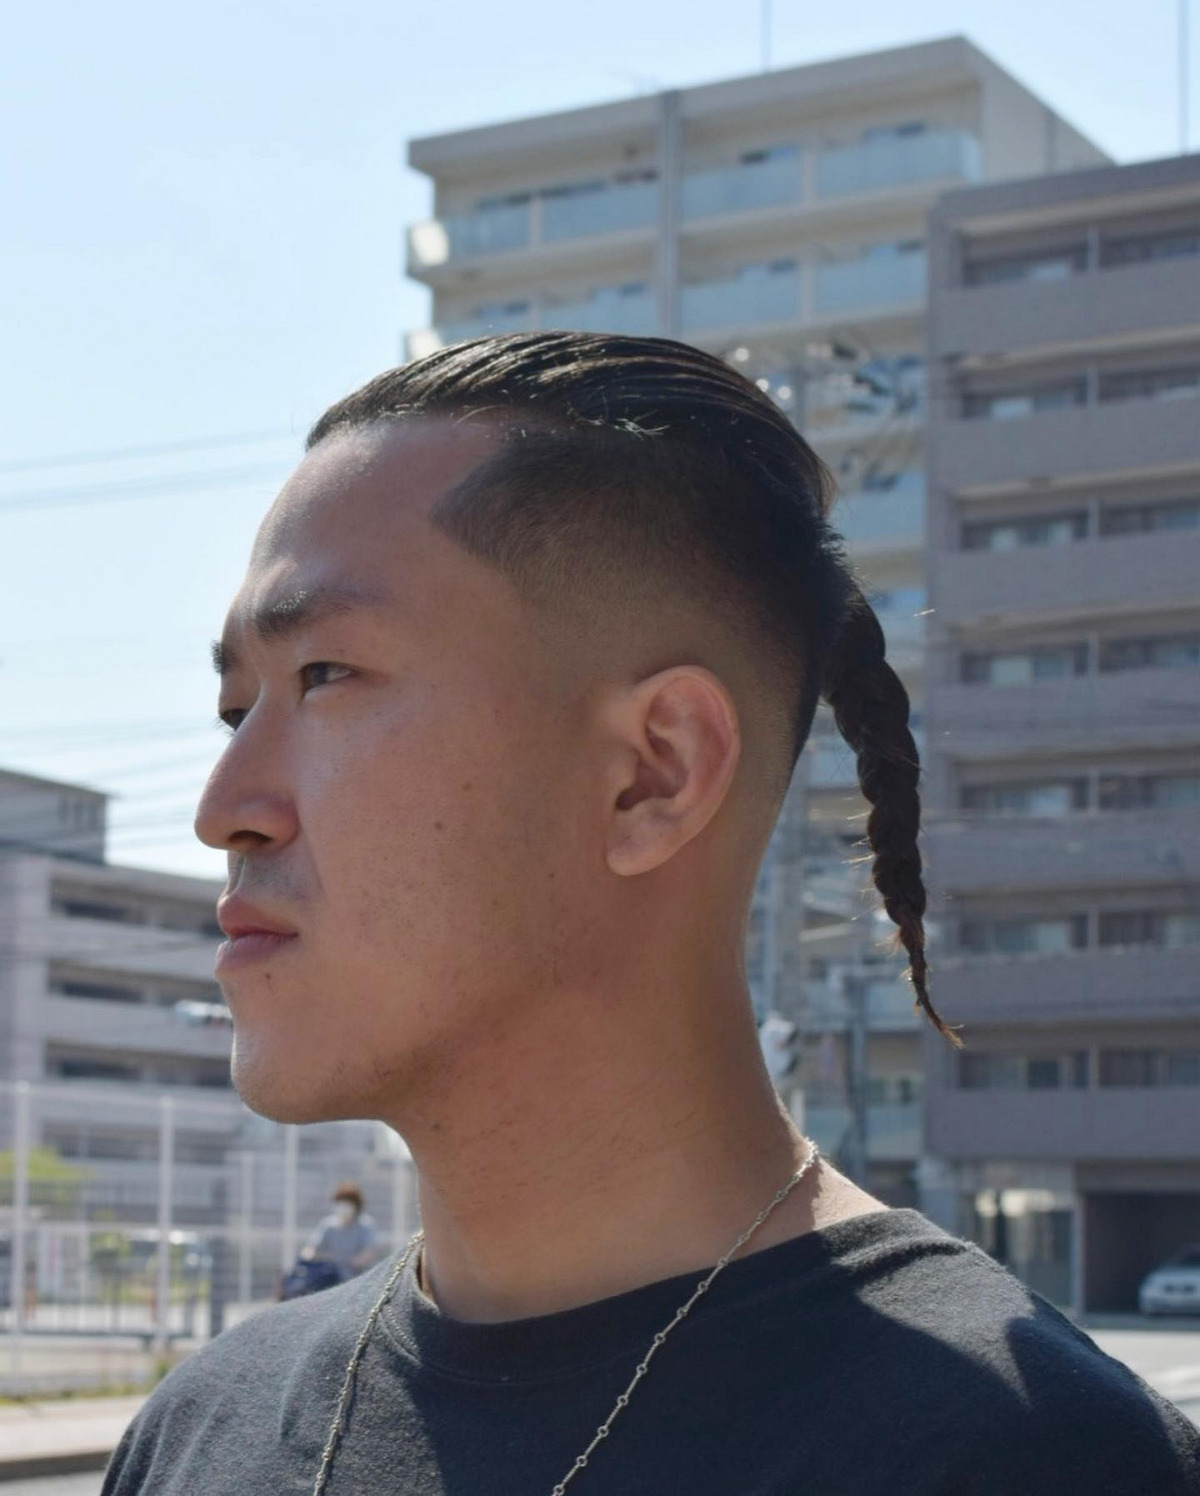 Samurai Braid Hairstyle